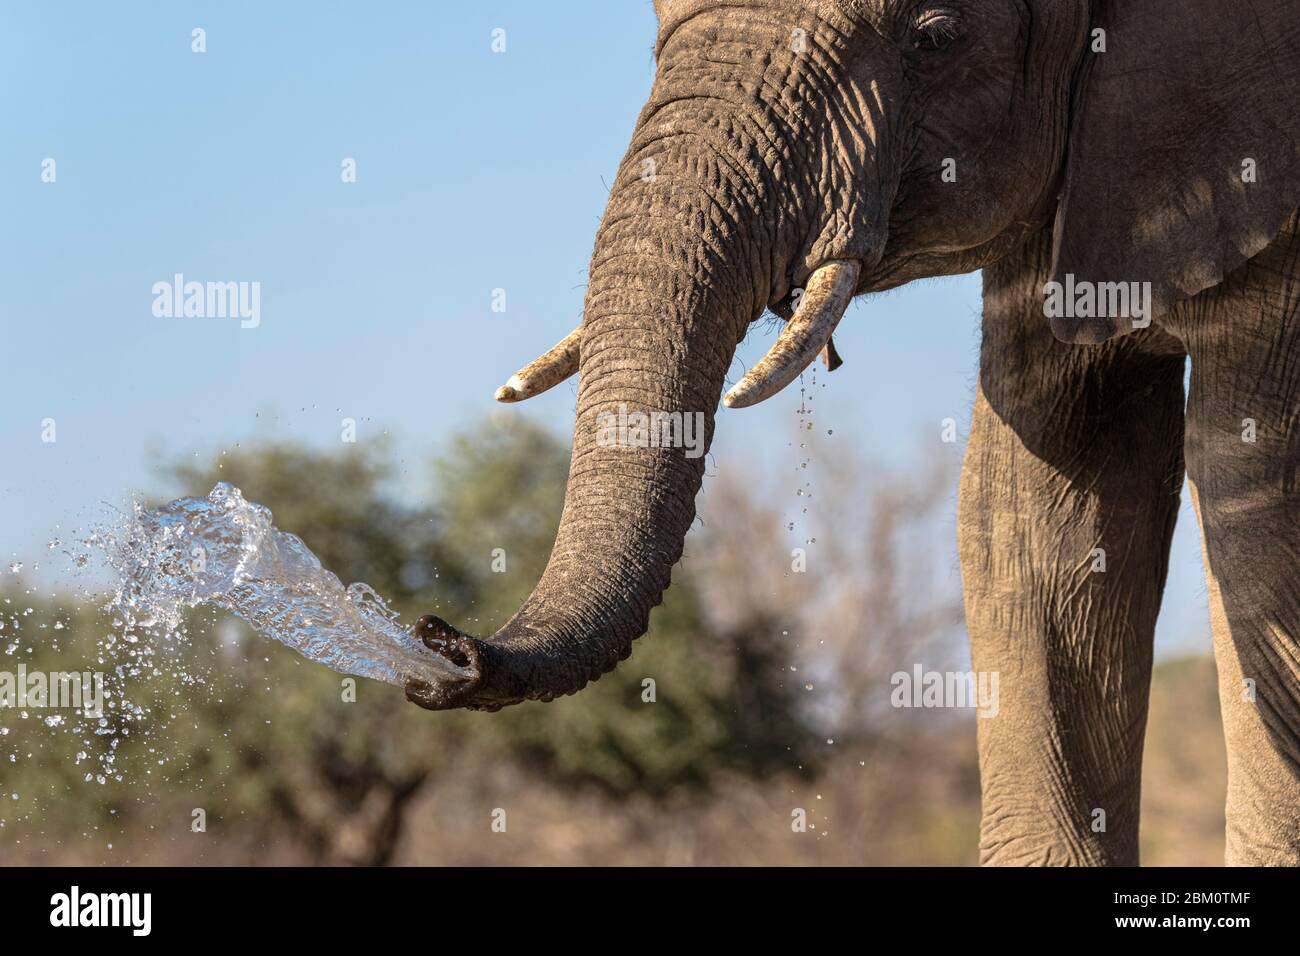 Elefante (Loxodonta africana) en el agua, Mashatu reserva de caza, Botswana Foto de stock